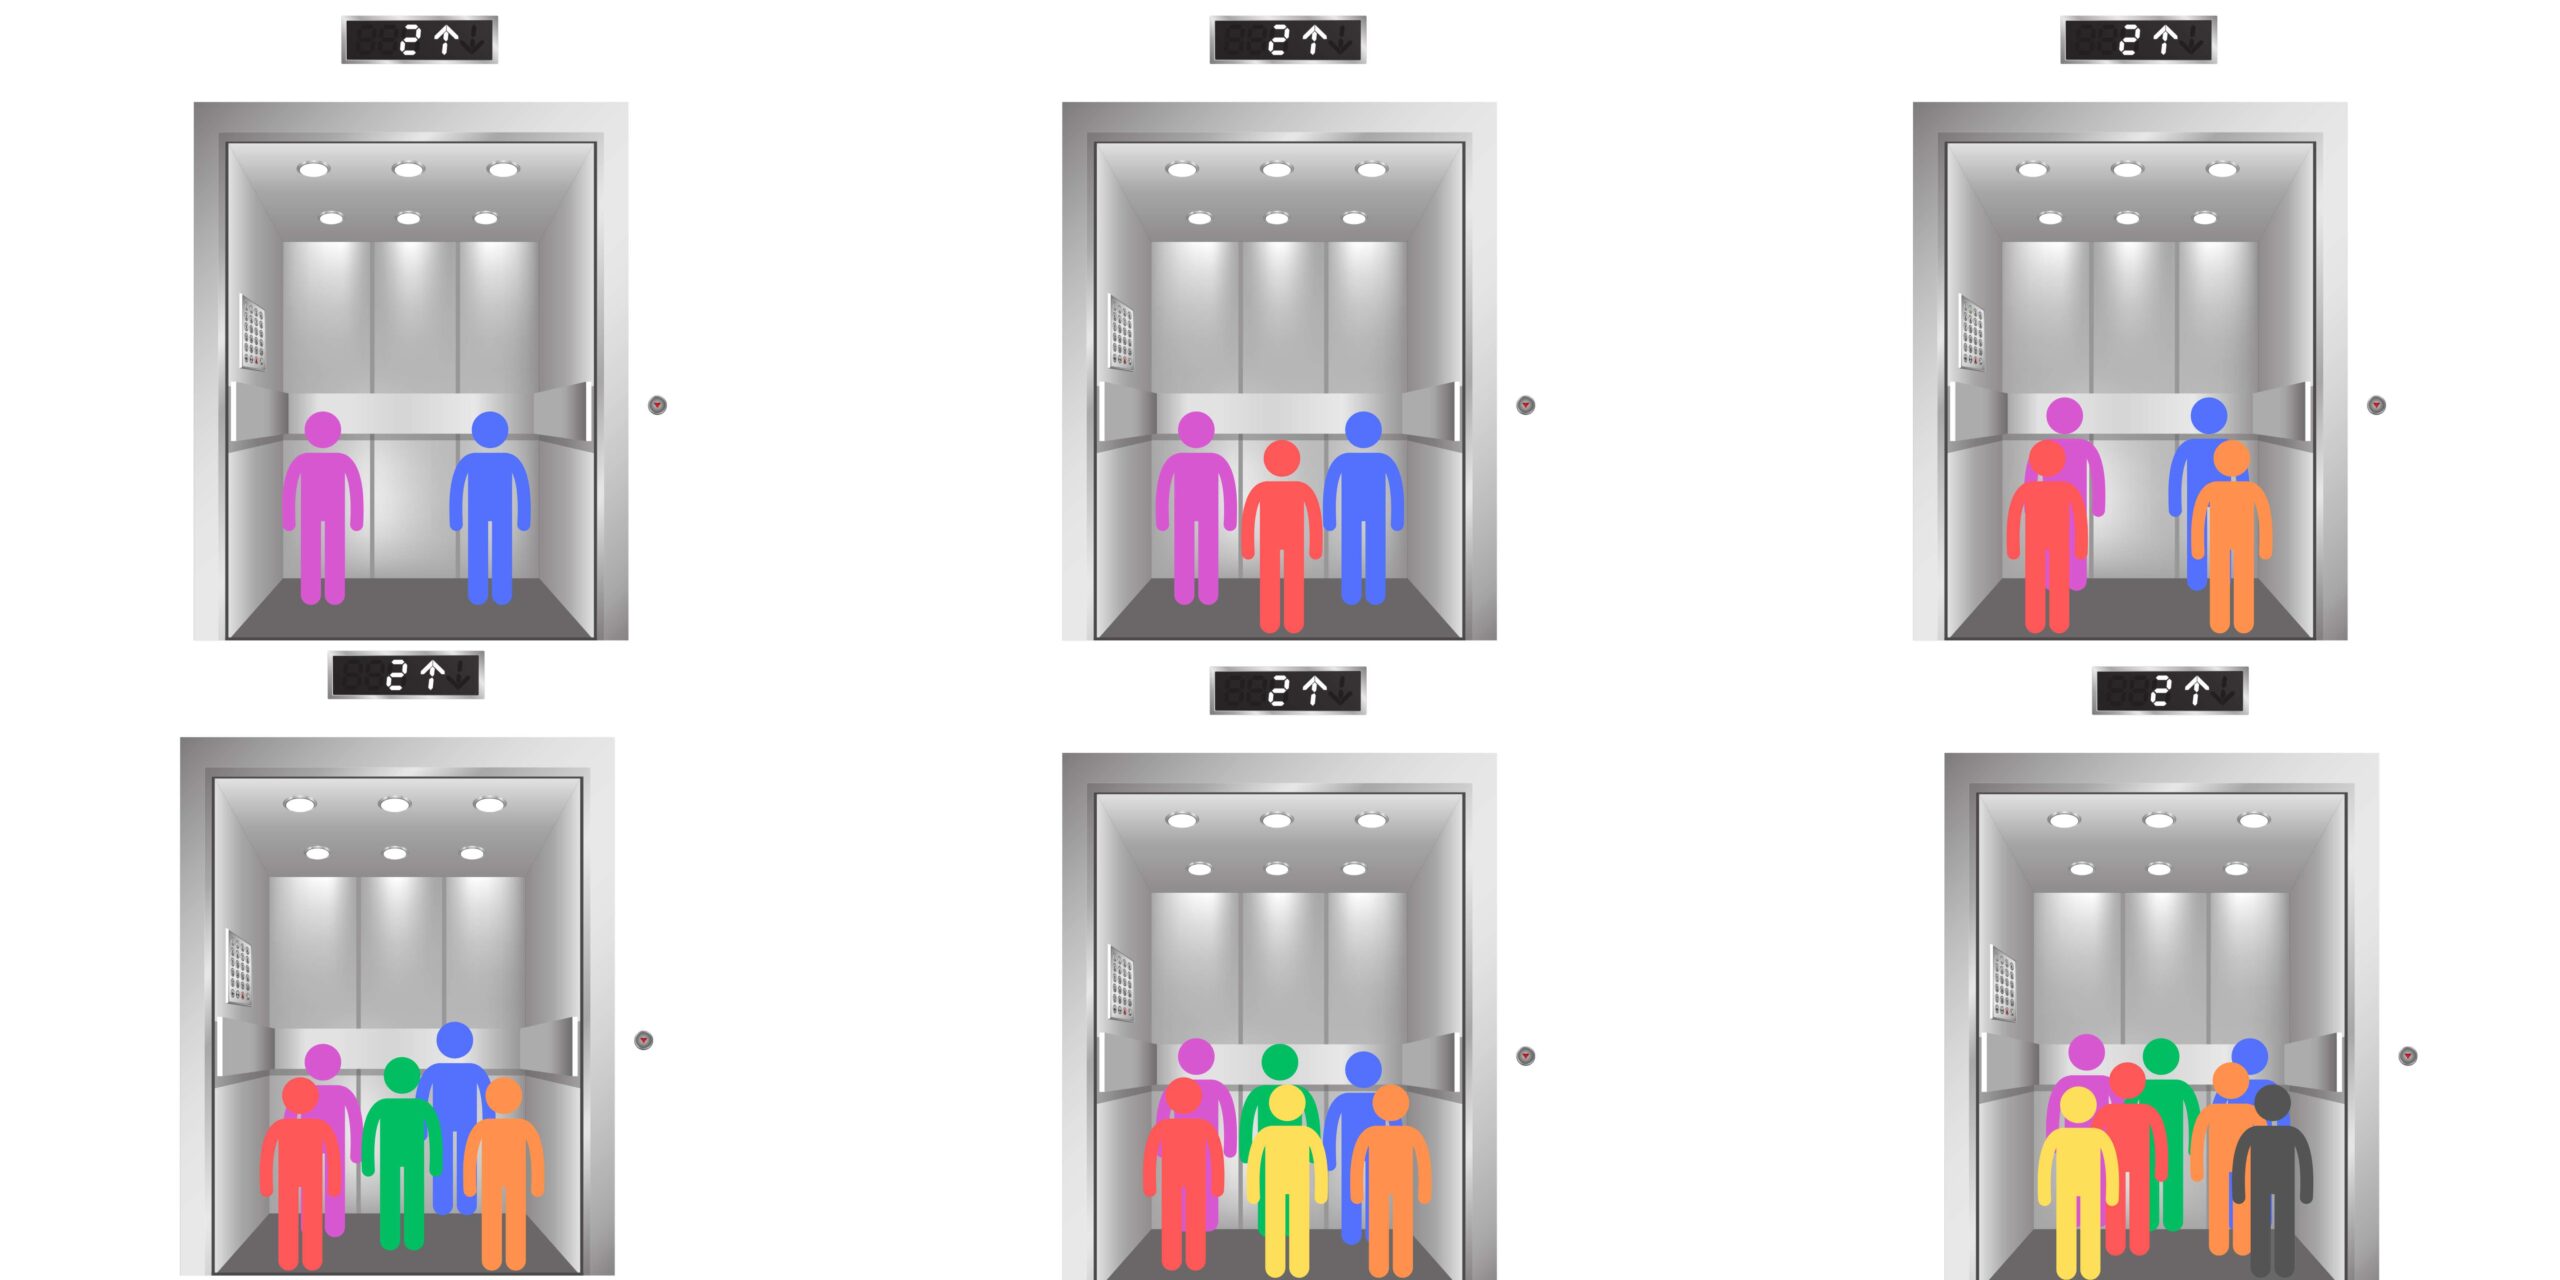 Personas dentro de varios ascensores